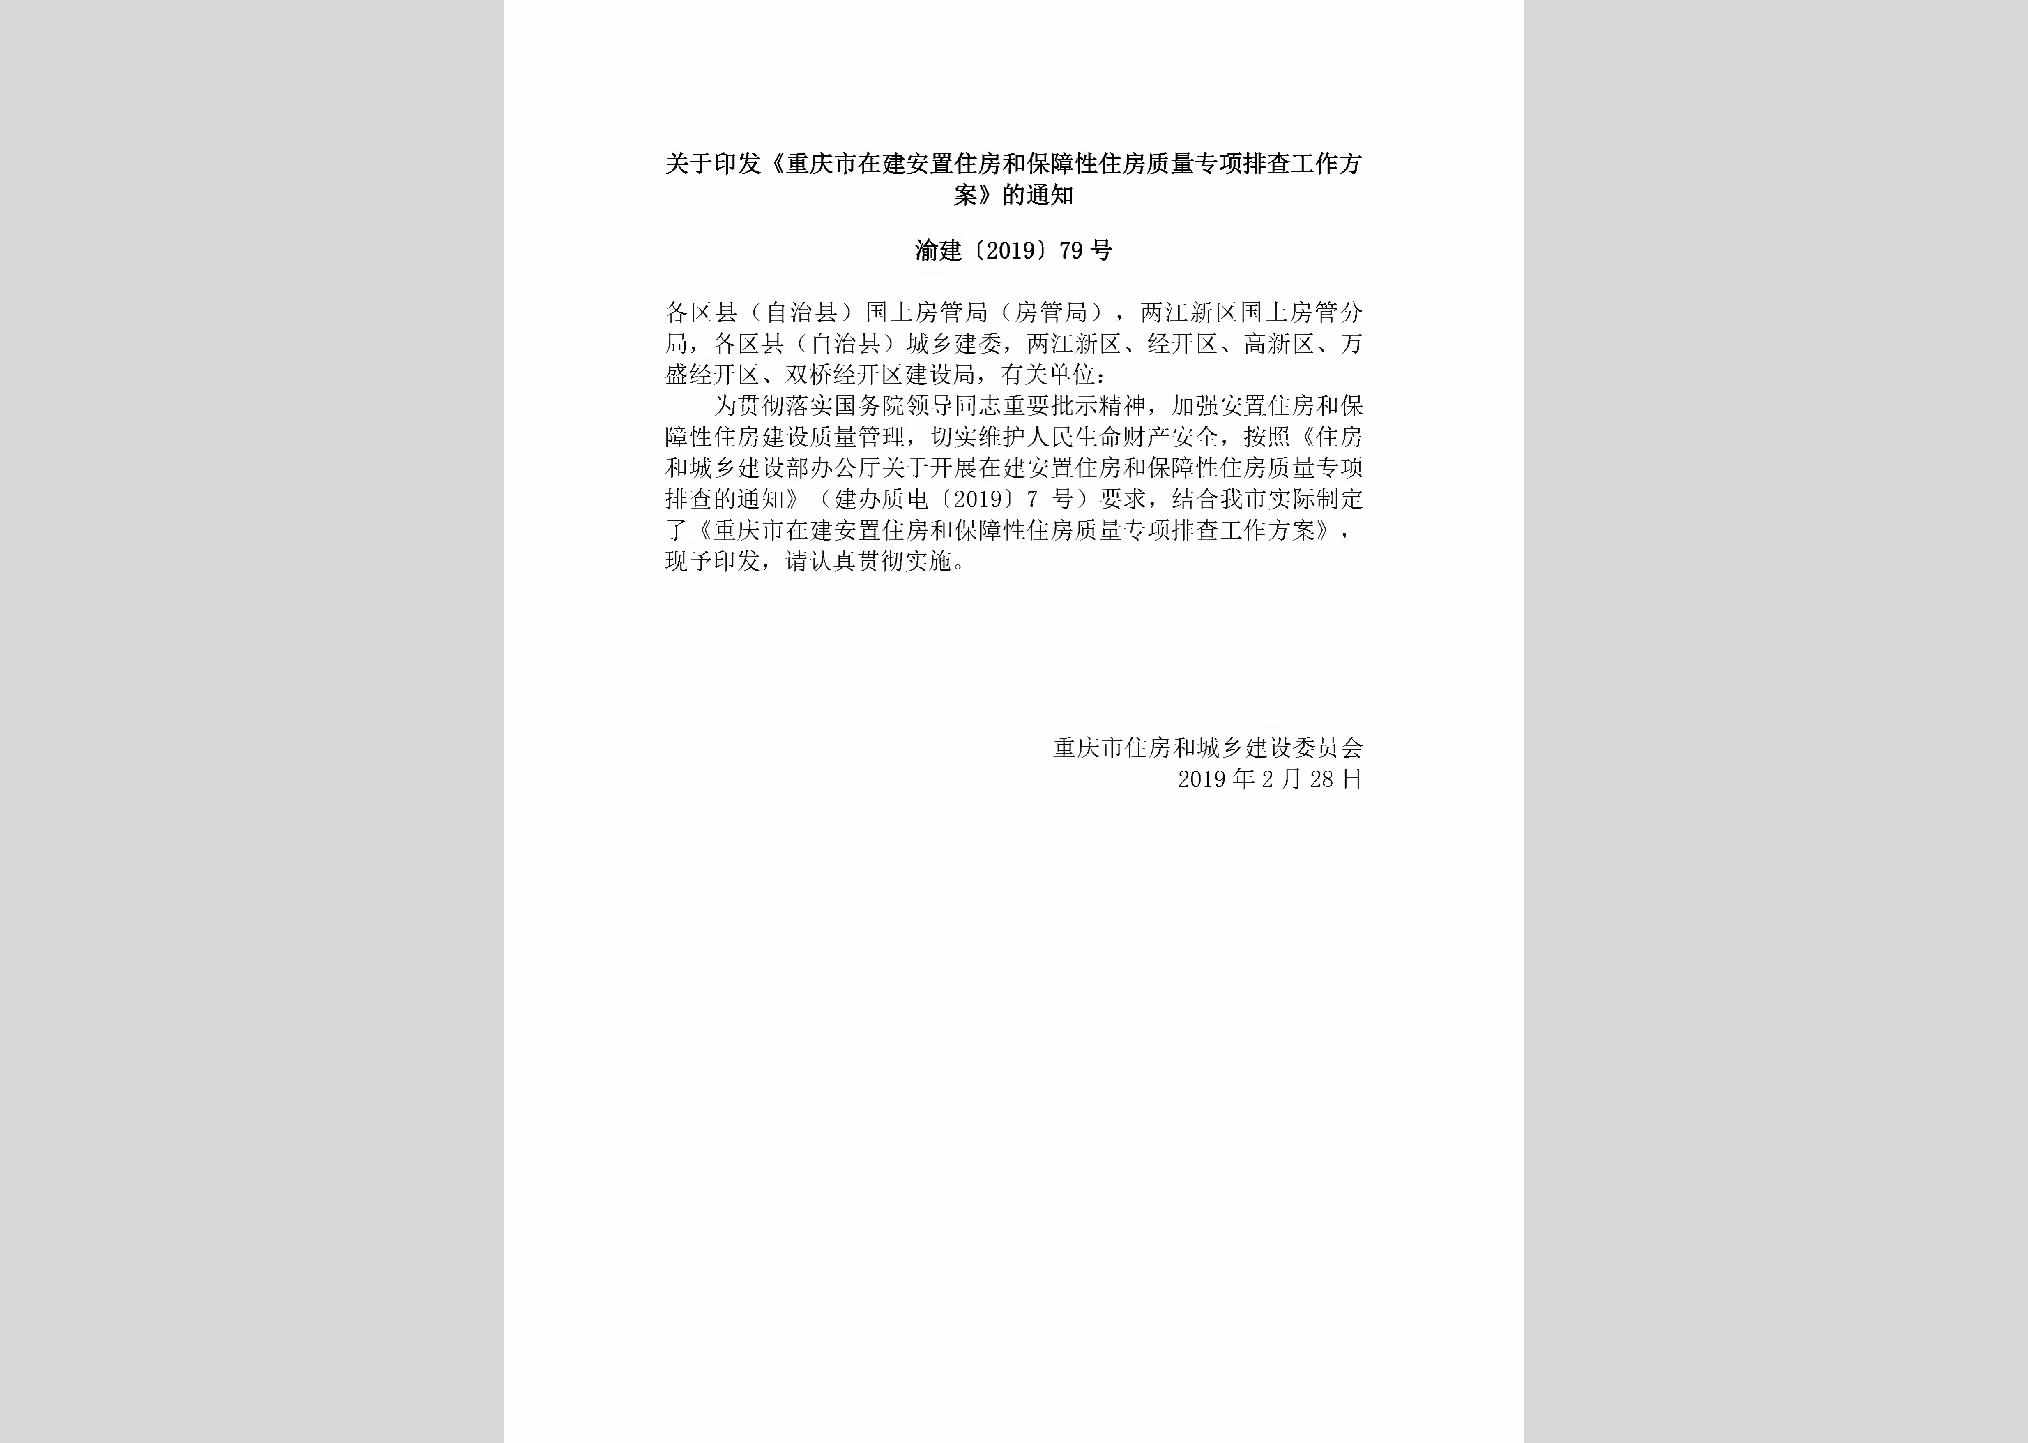 渝建[2019]79号：关于印发《重庆市在建安置住房和保障性住房质量专项排查工作方案》的通知